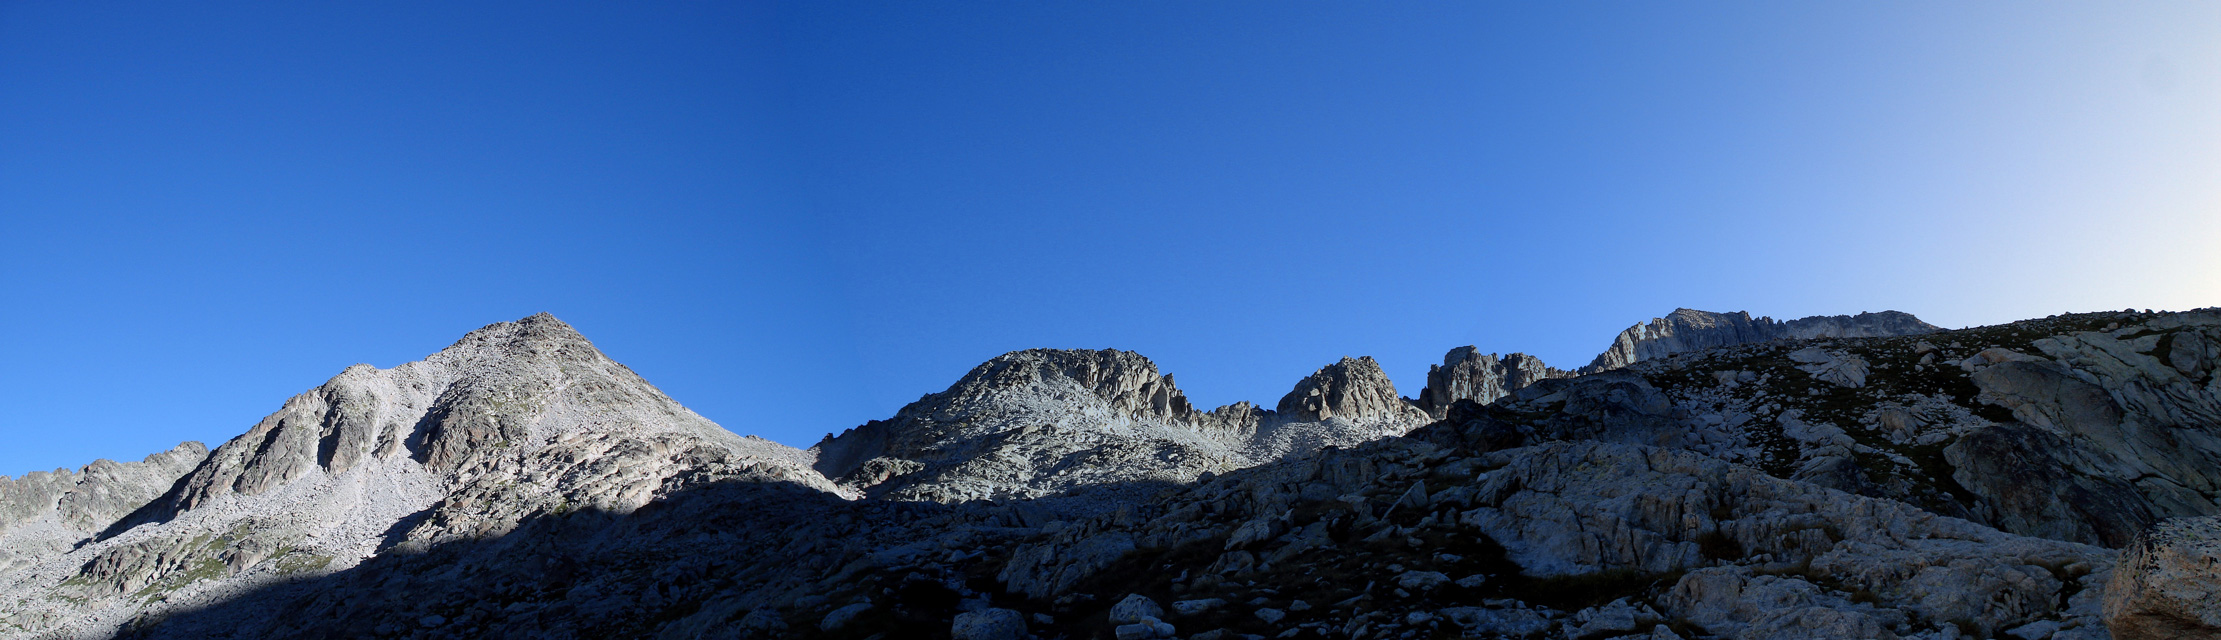 Aragüells (3037 m) - Aguja Juncadella (3021 m) - Aguja Cregüeña (3043 m) - Aguja Haurillon (3075 m) - Pico Maldito (3350 m)